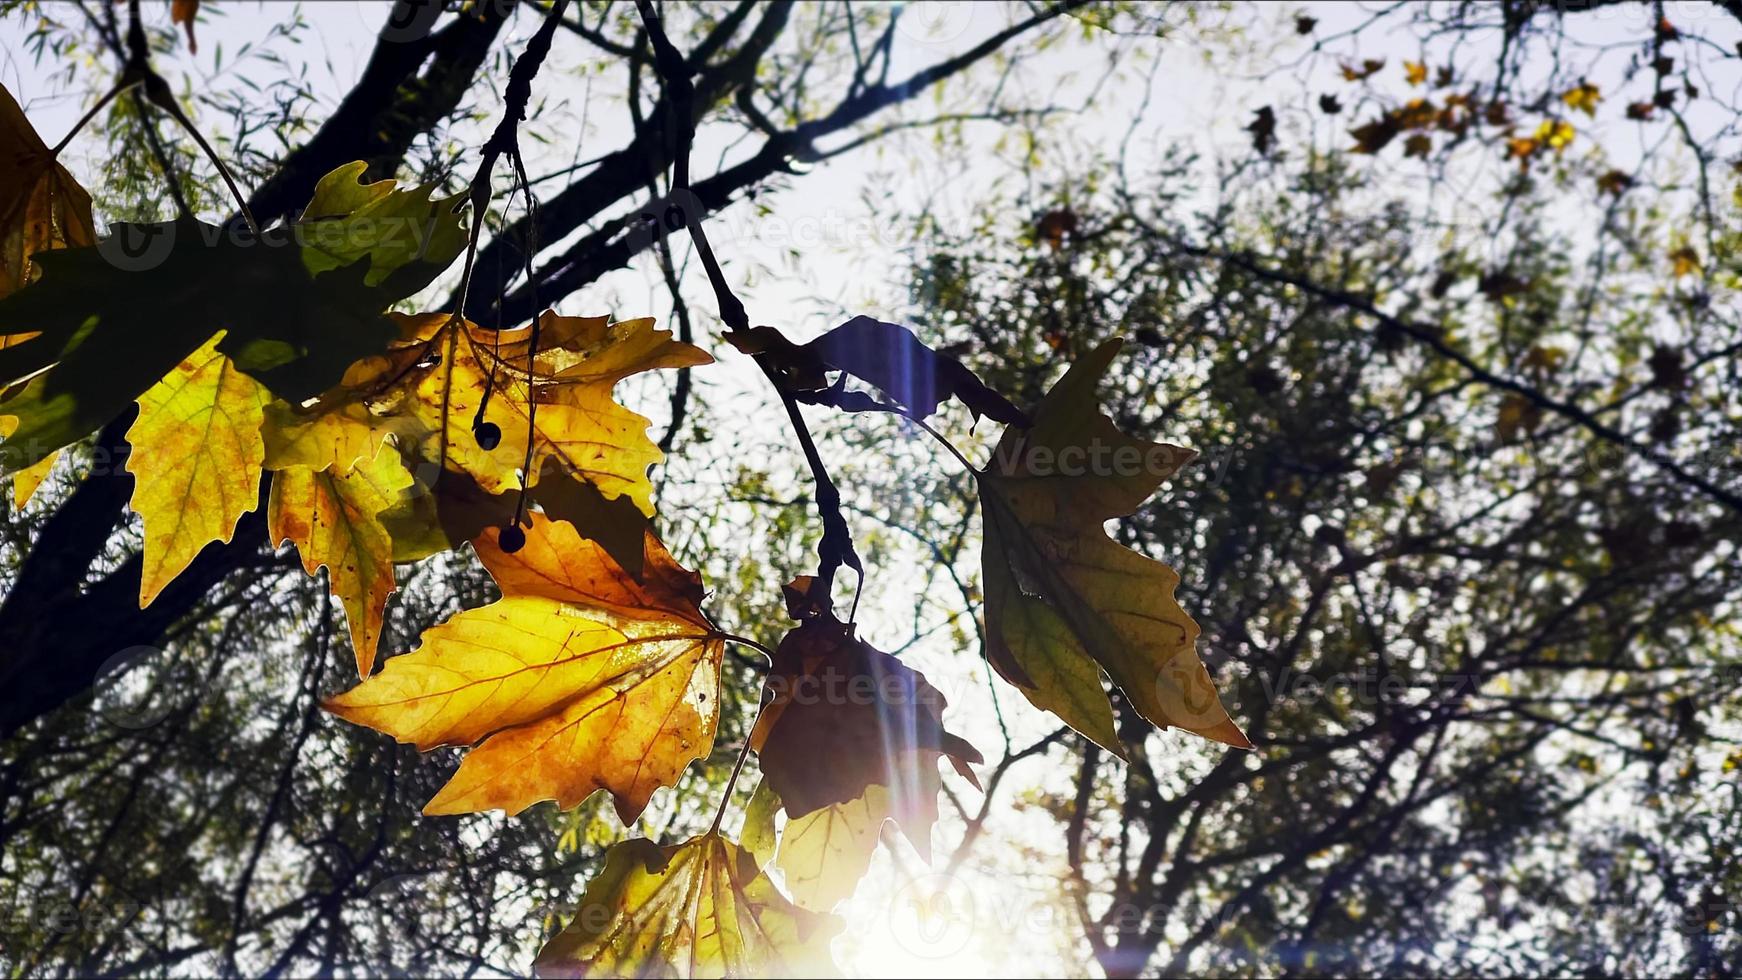 belle saison d'automne naturelle feuilles sèches brunes romantiques photo